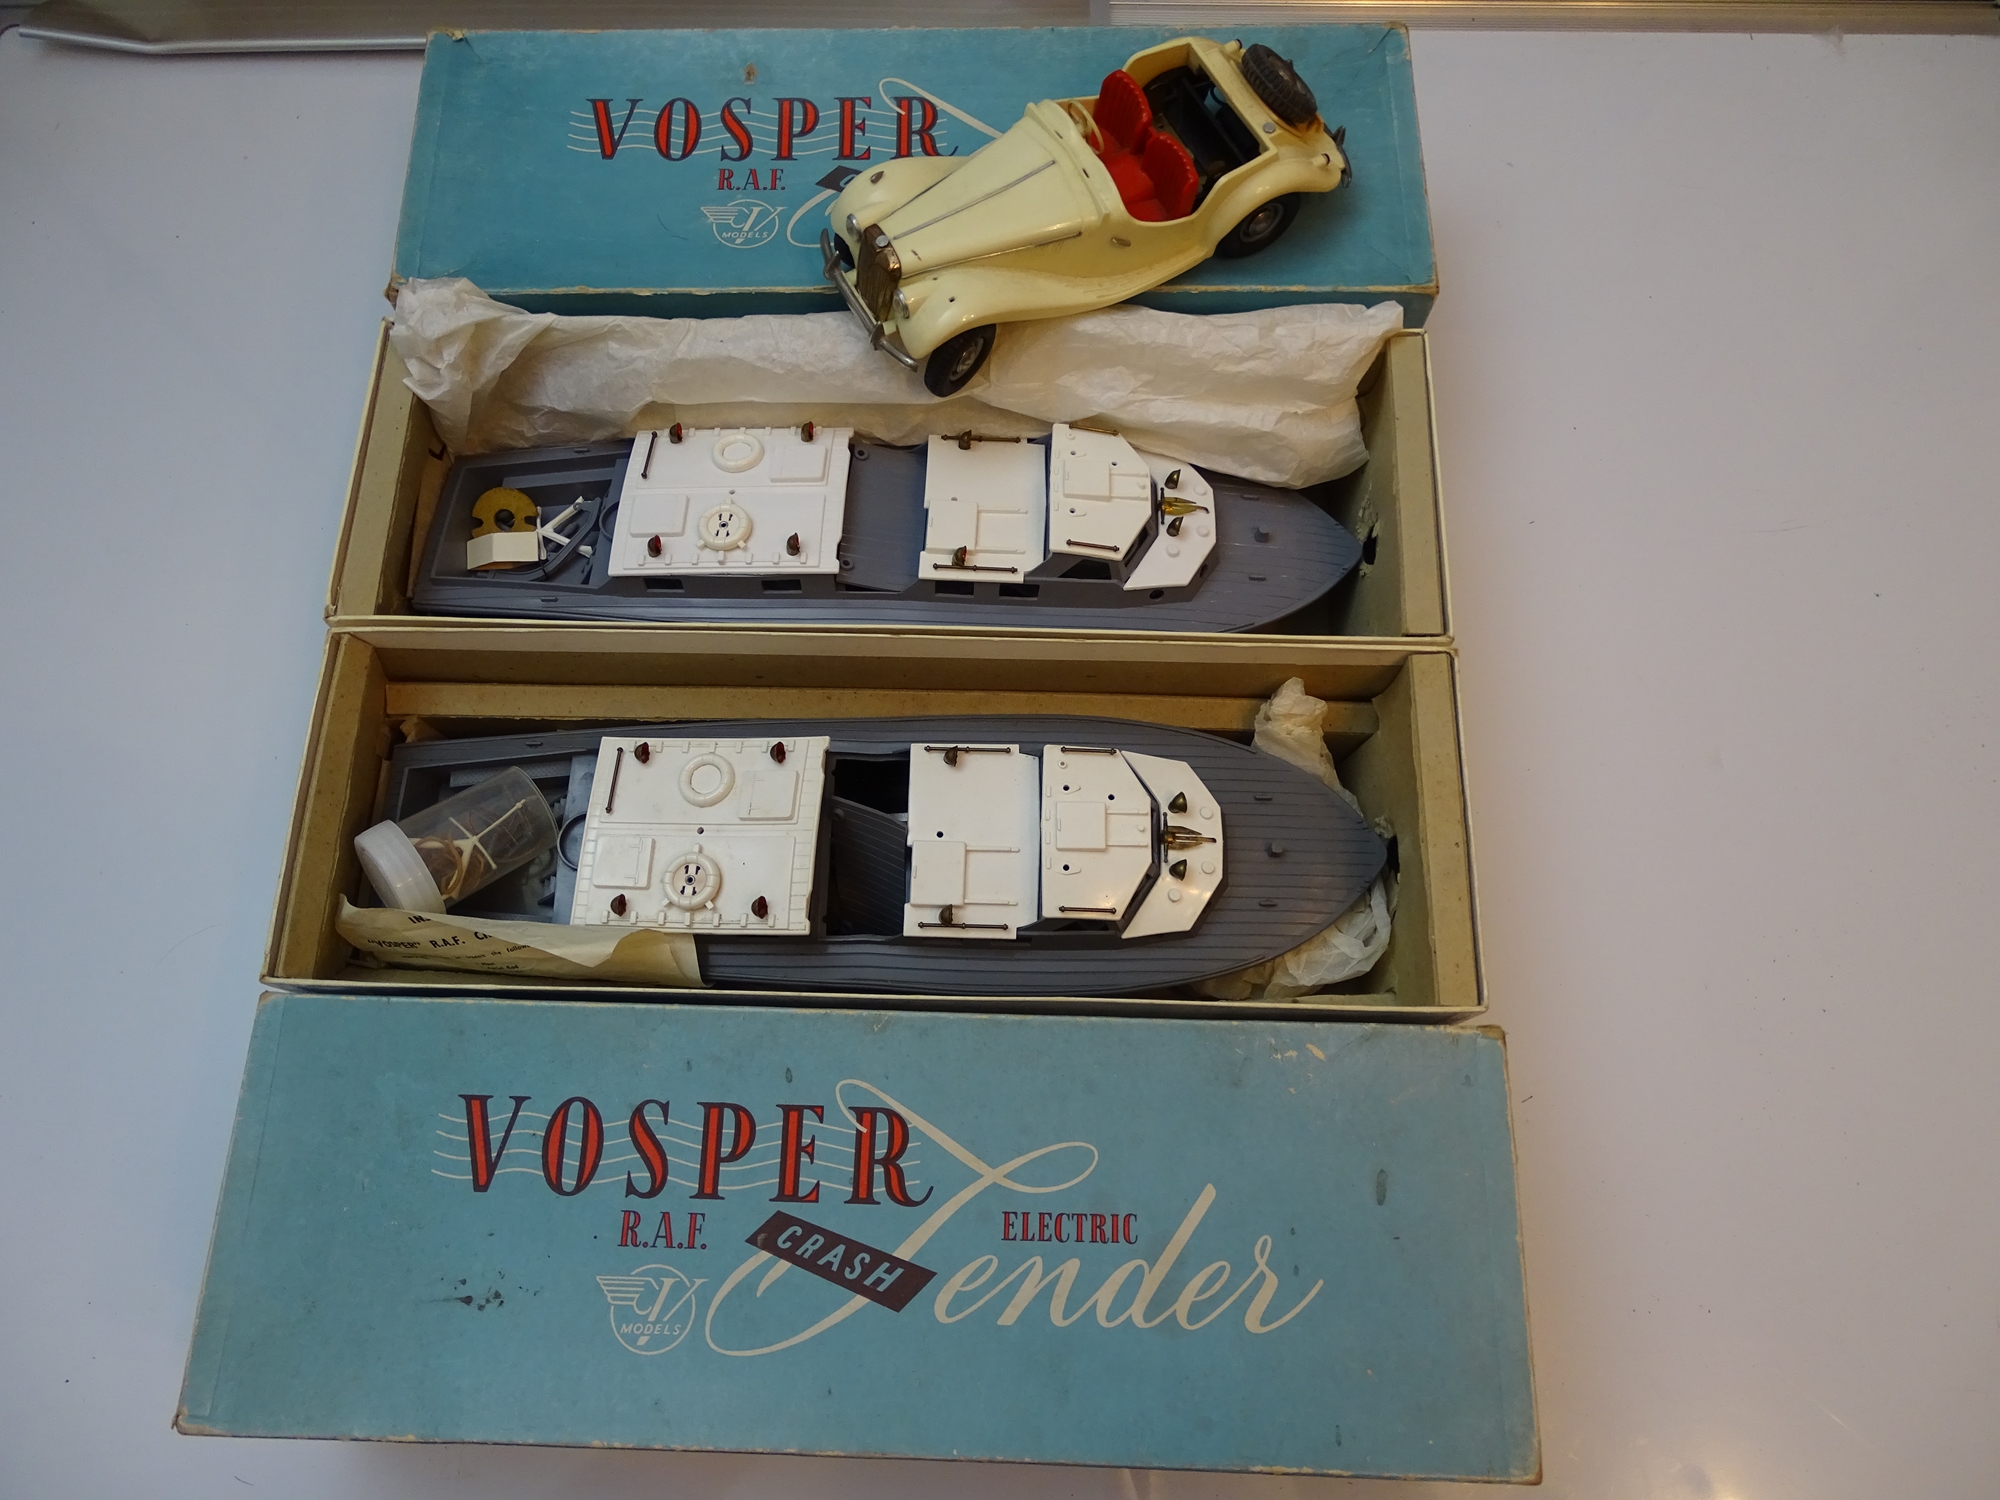 VINTAGE TOYS: A pair of RAF Vosper Crash Tenders in original VICTORY INDUSTRIES Boxes - both